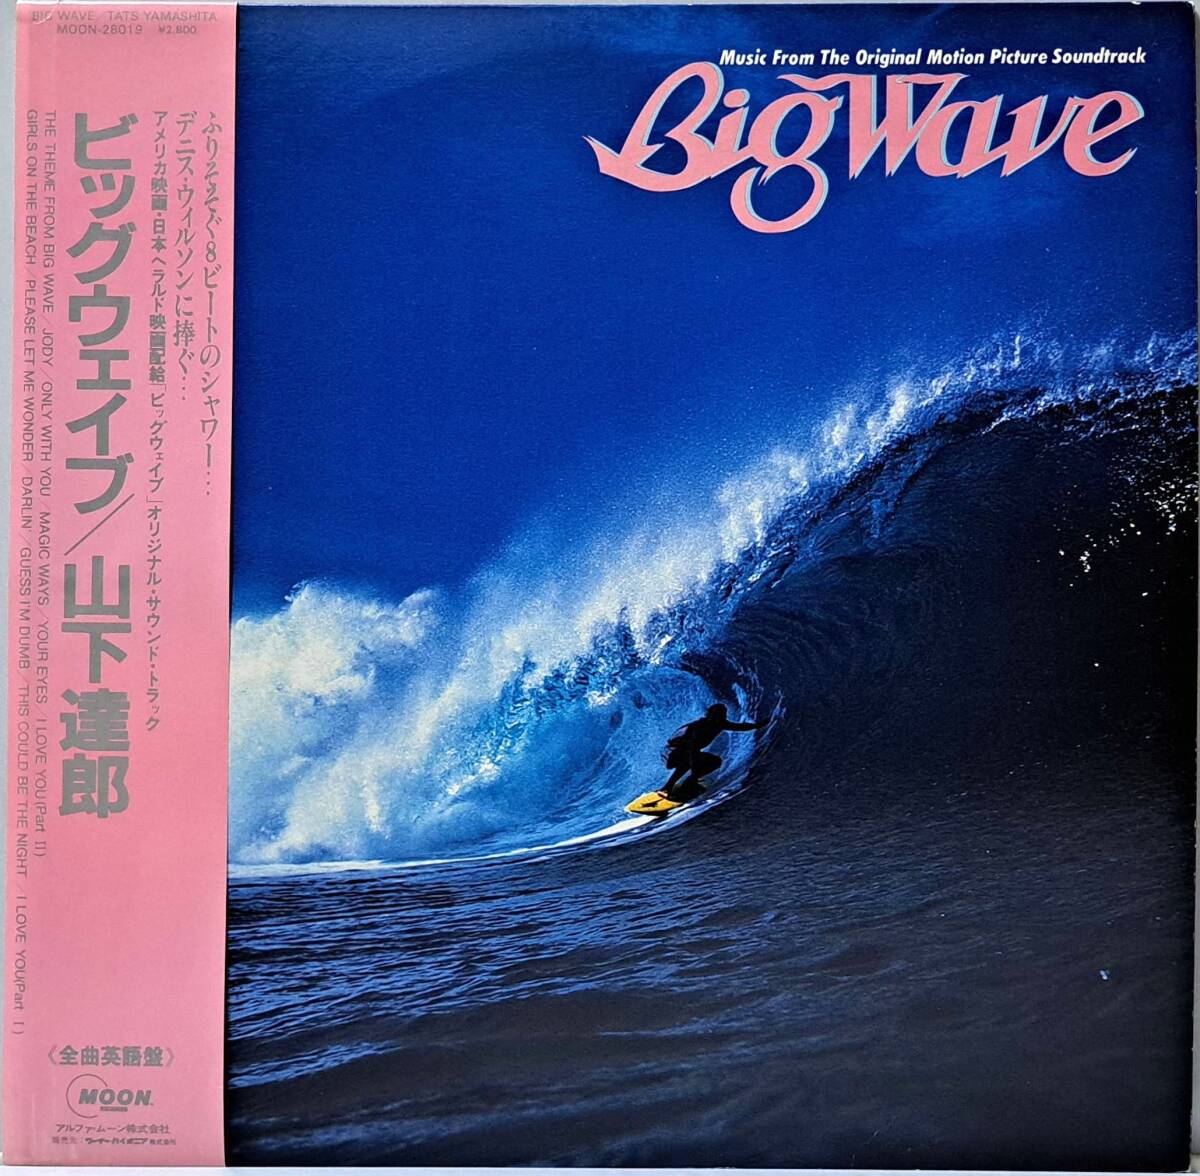 山下達郎 : OST BIG WAVE ビッグウェイブ 帯付き 国内盤 中古 アナログ LPレコード盤 1984年 MOON-28019 M2-KDO-1439の画像1